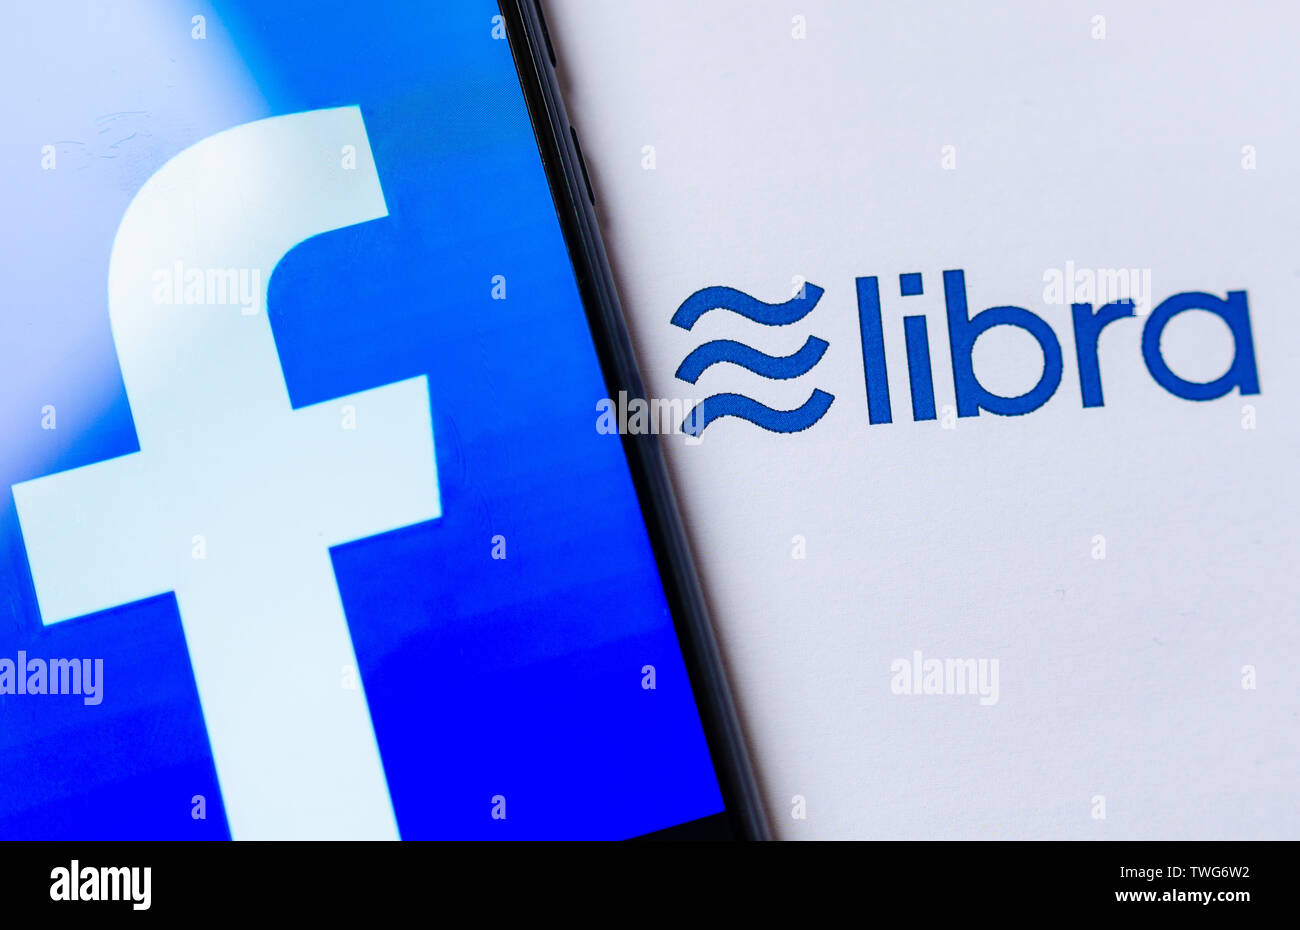 Facebook La Balance est un nouveau service de chiffrement. La photo du smartphone avec logo de Facebook sur l'écran et la tge logo Balance sur la broshure à côté. Banque D'Images